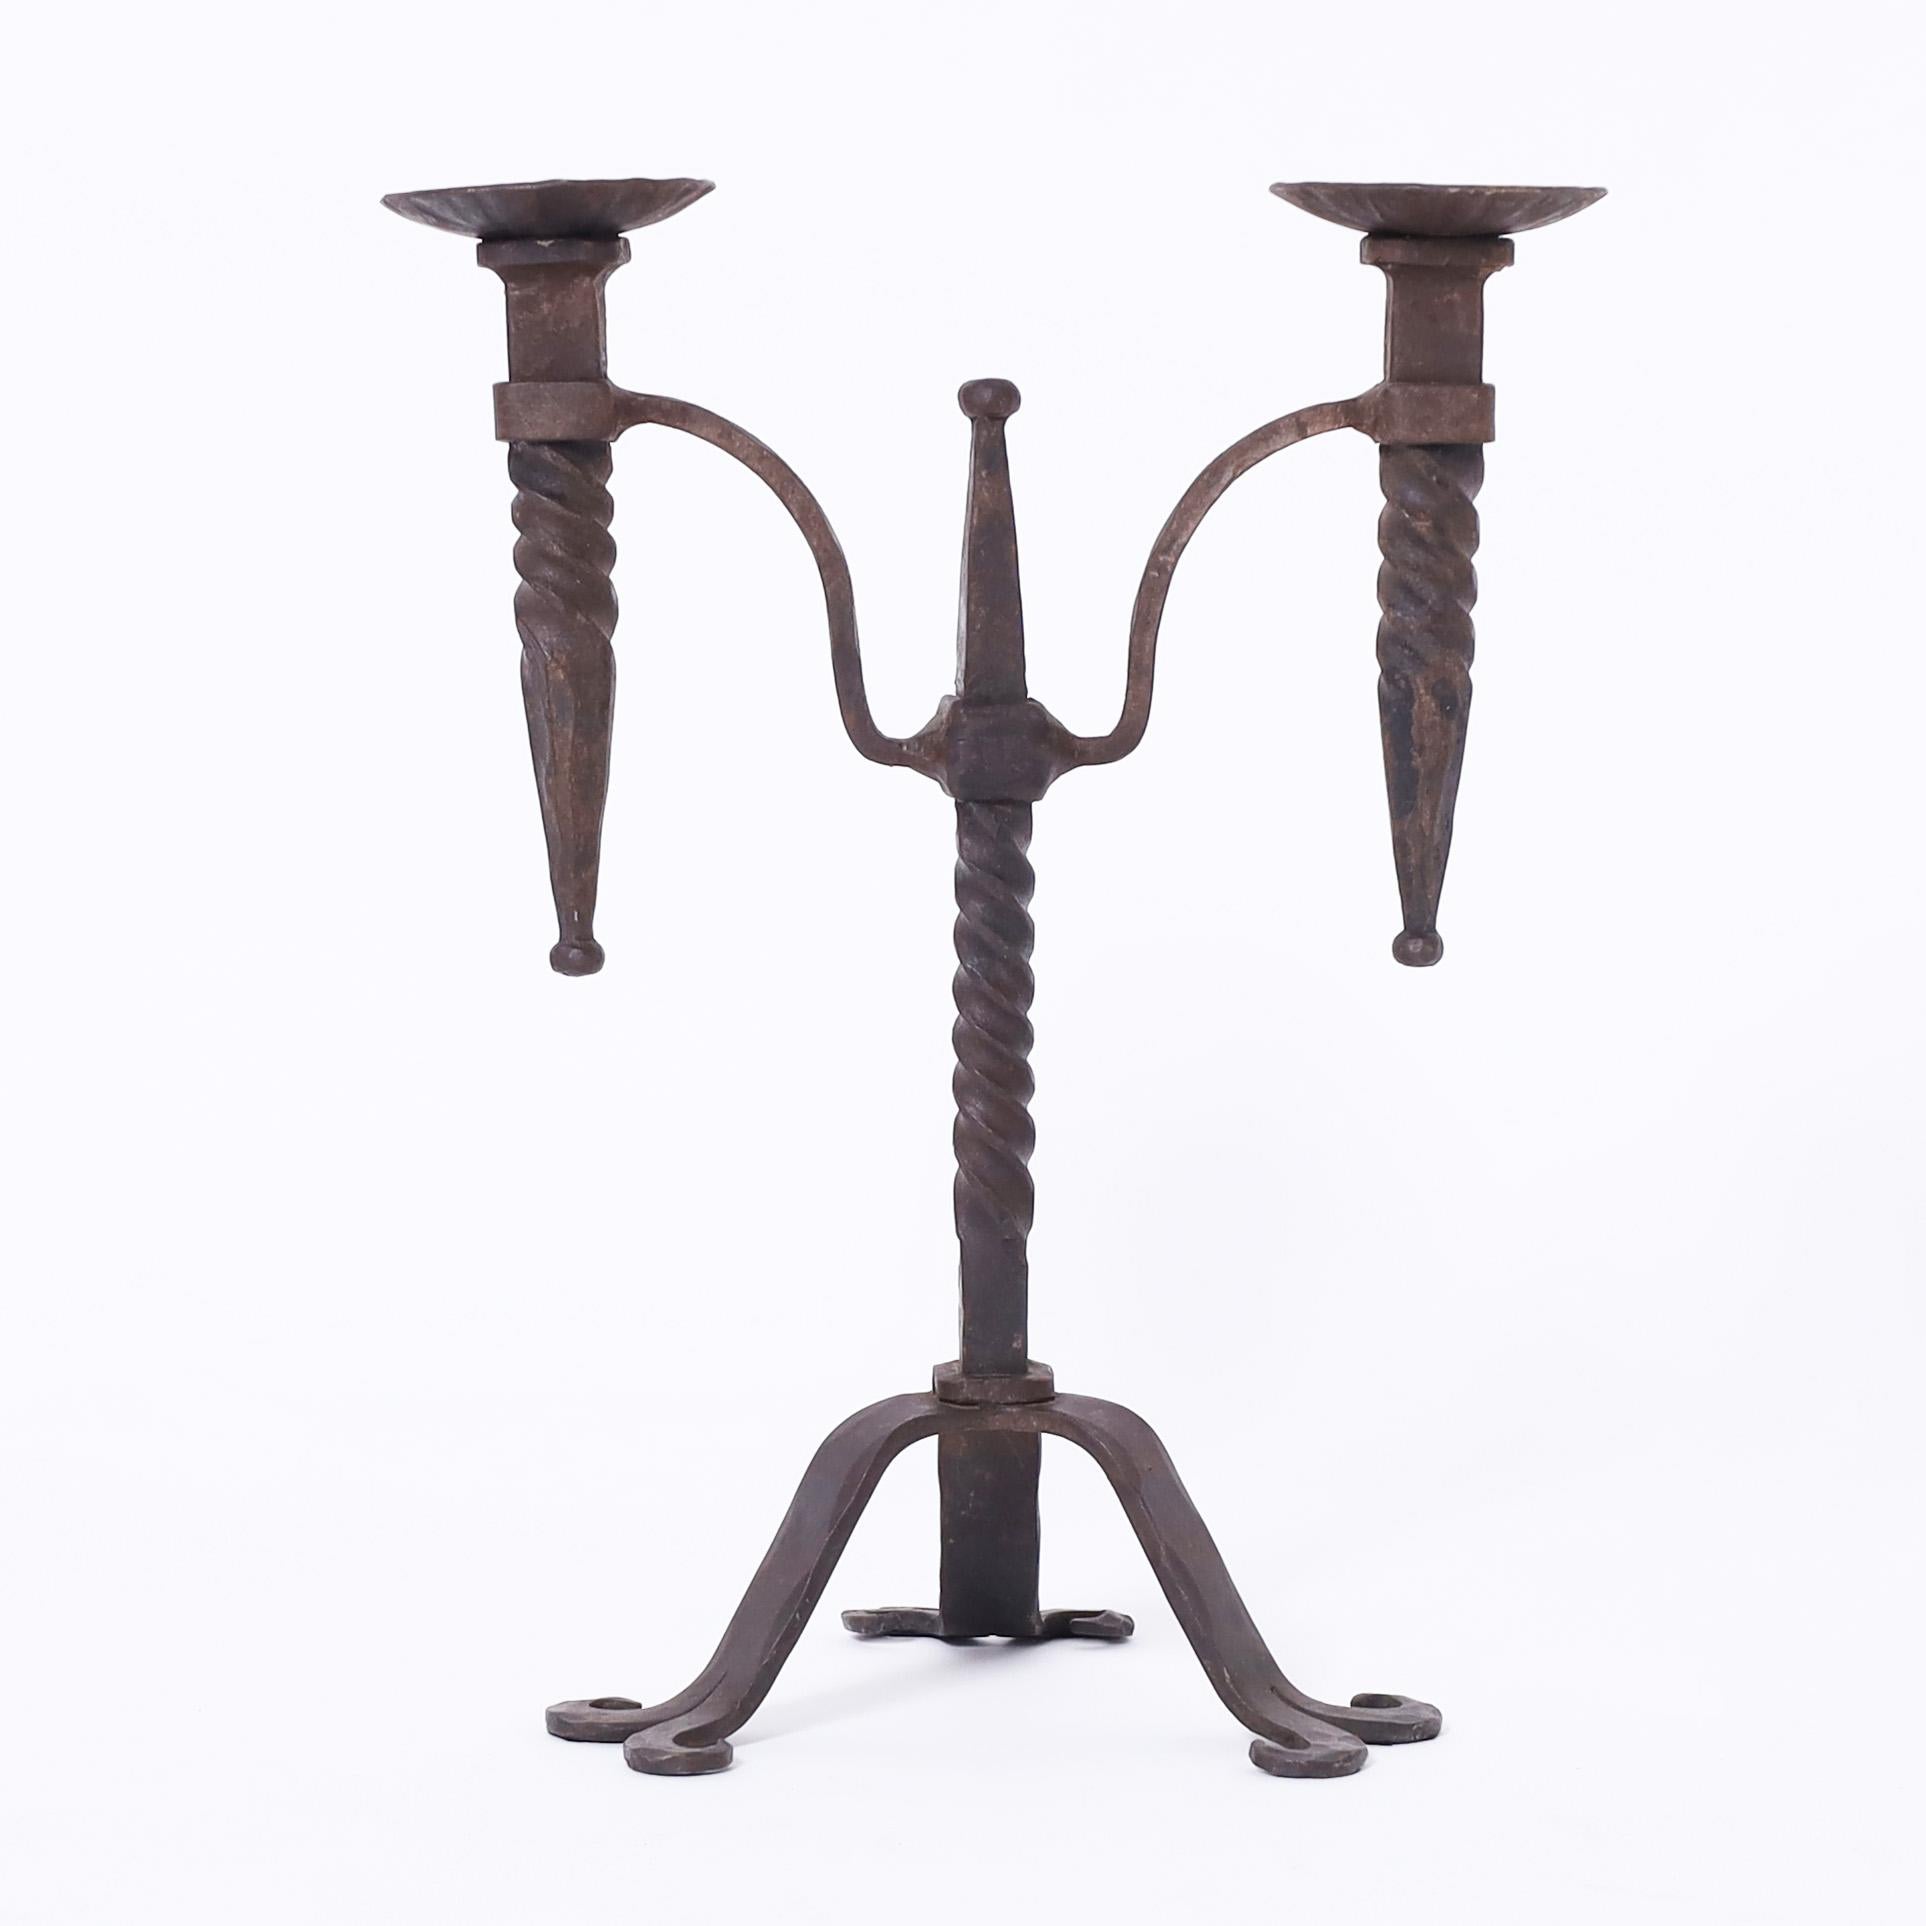 Herausragendes Paar französischer schmiedeeiserner Kerzenständer aus dem 19. Jahrhundert mit jeweils zwei Kerzenhaltern, die an einem verdrehten Mittelpfosten auf drei Cabriole-Beinen befestigt sind.